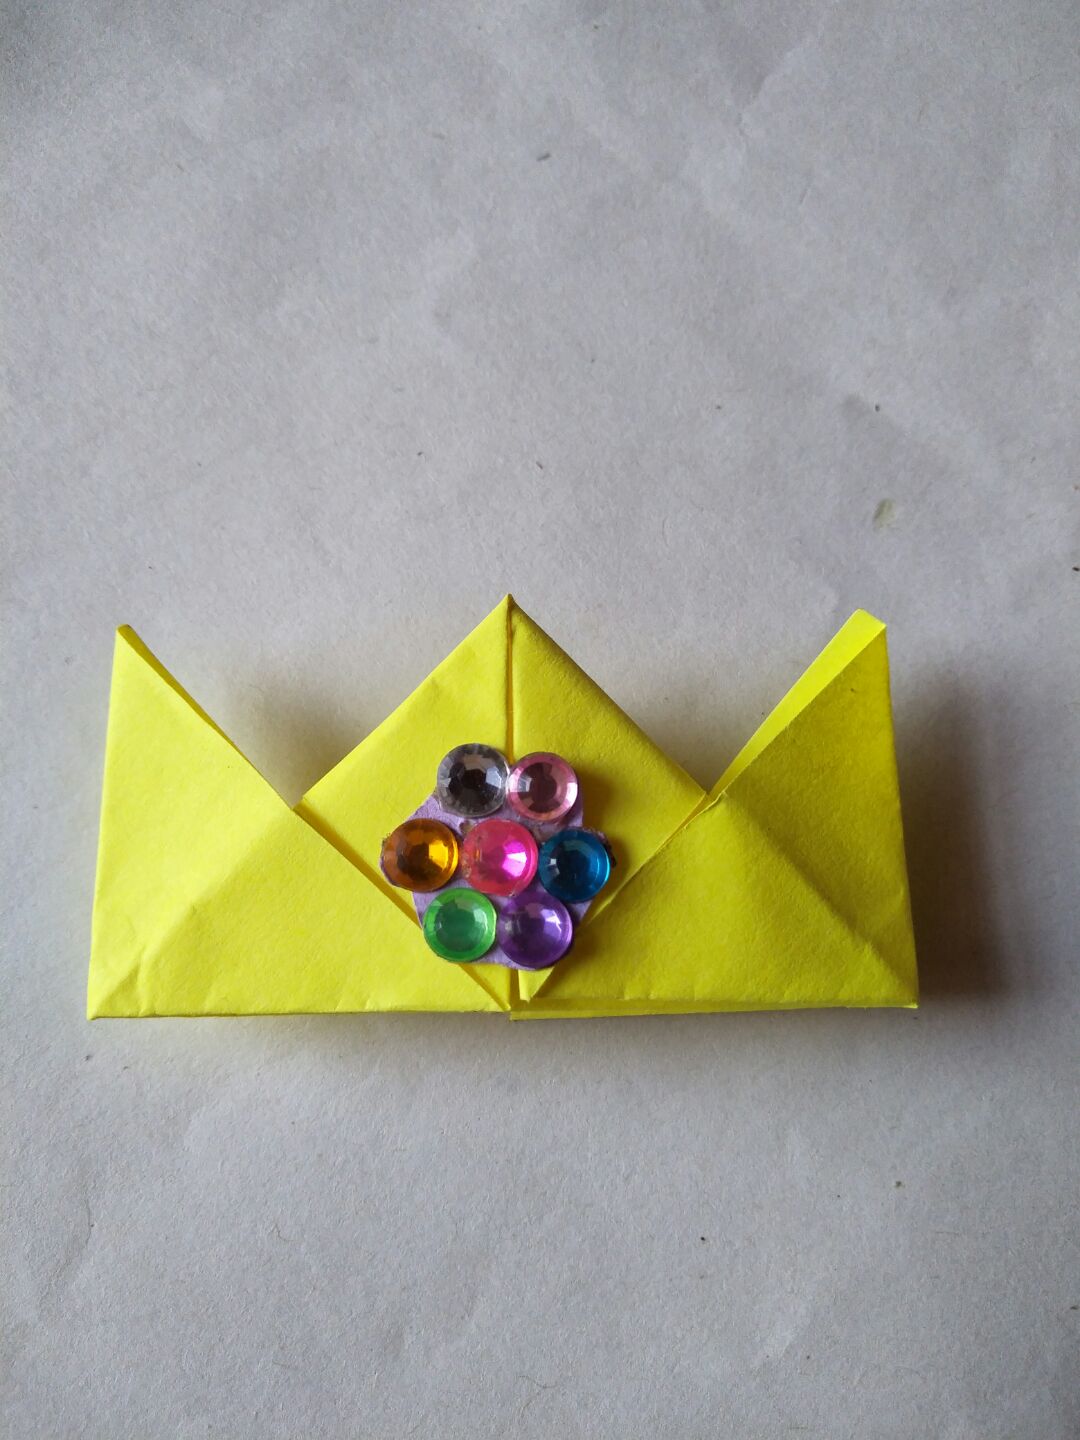 简单的折纸王冠，造型不太好看，不喜勿怪